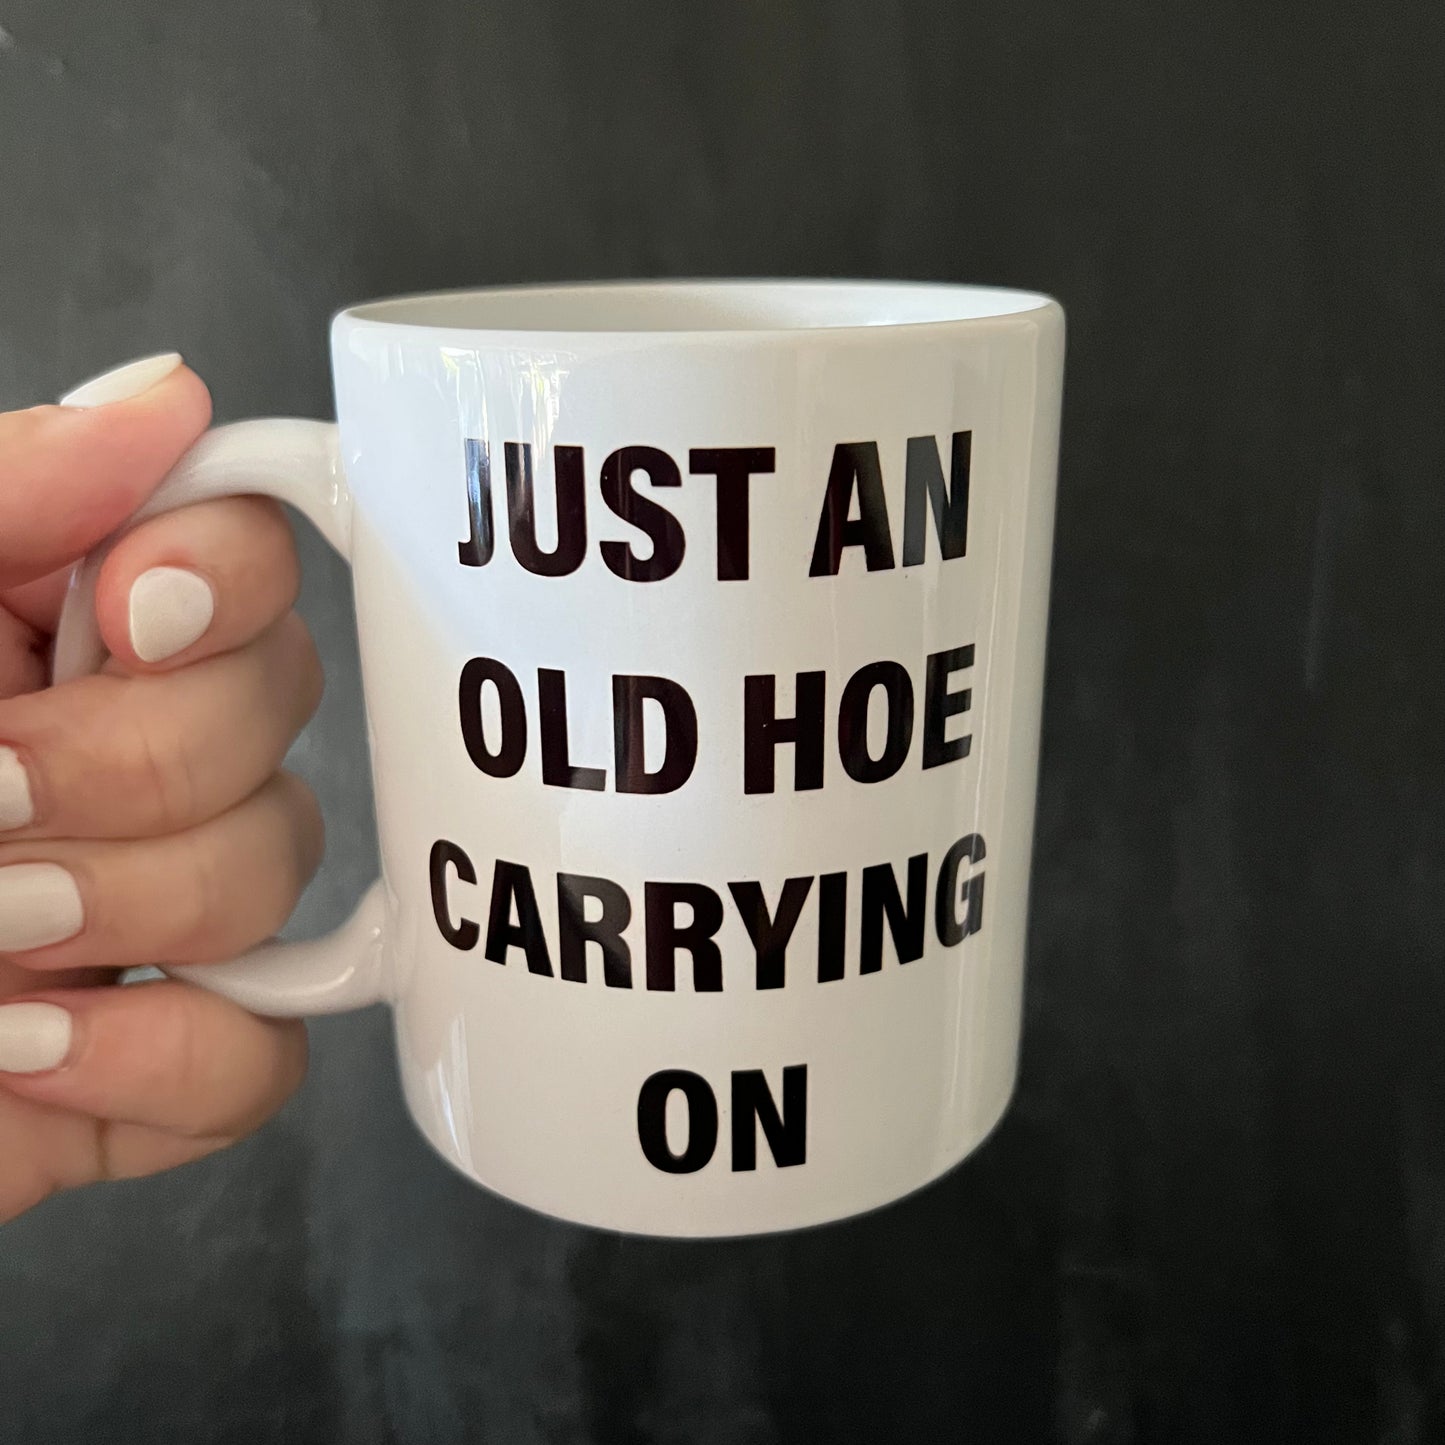 Carrying on mug